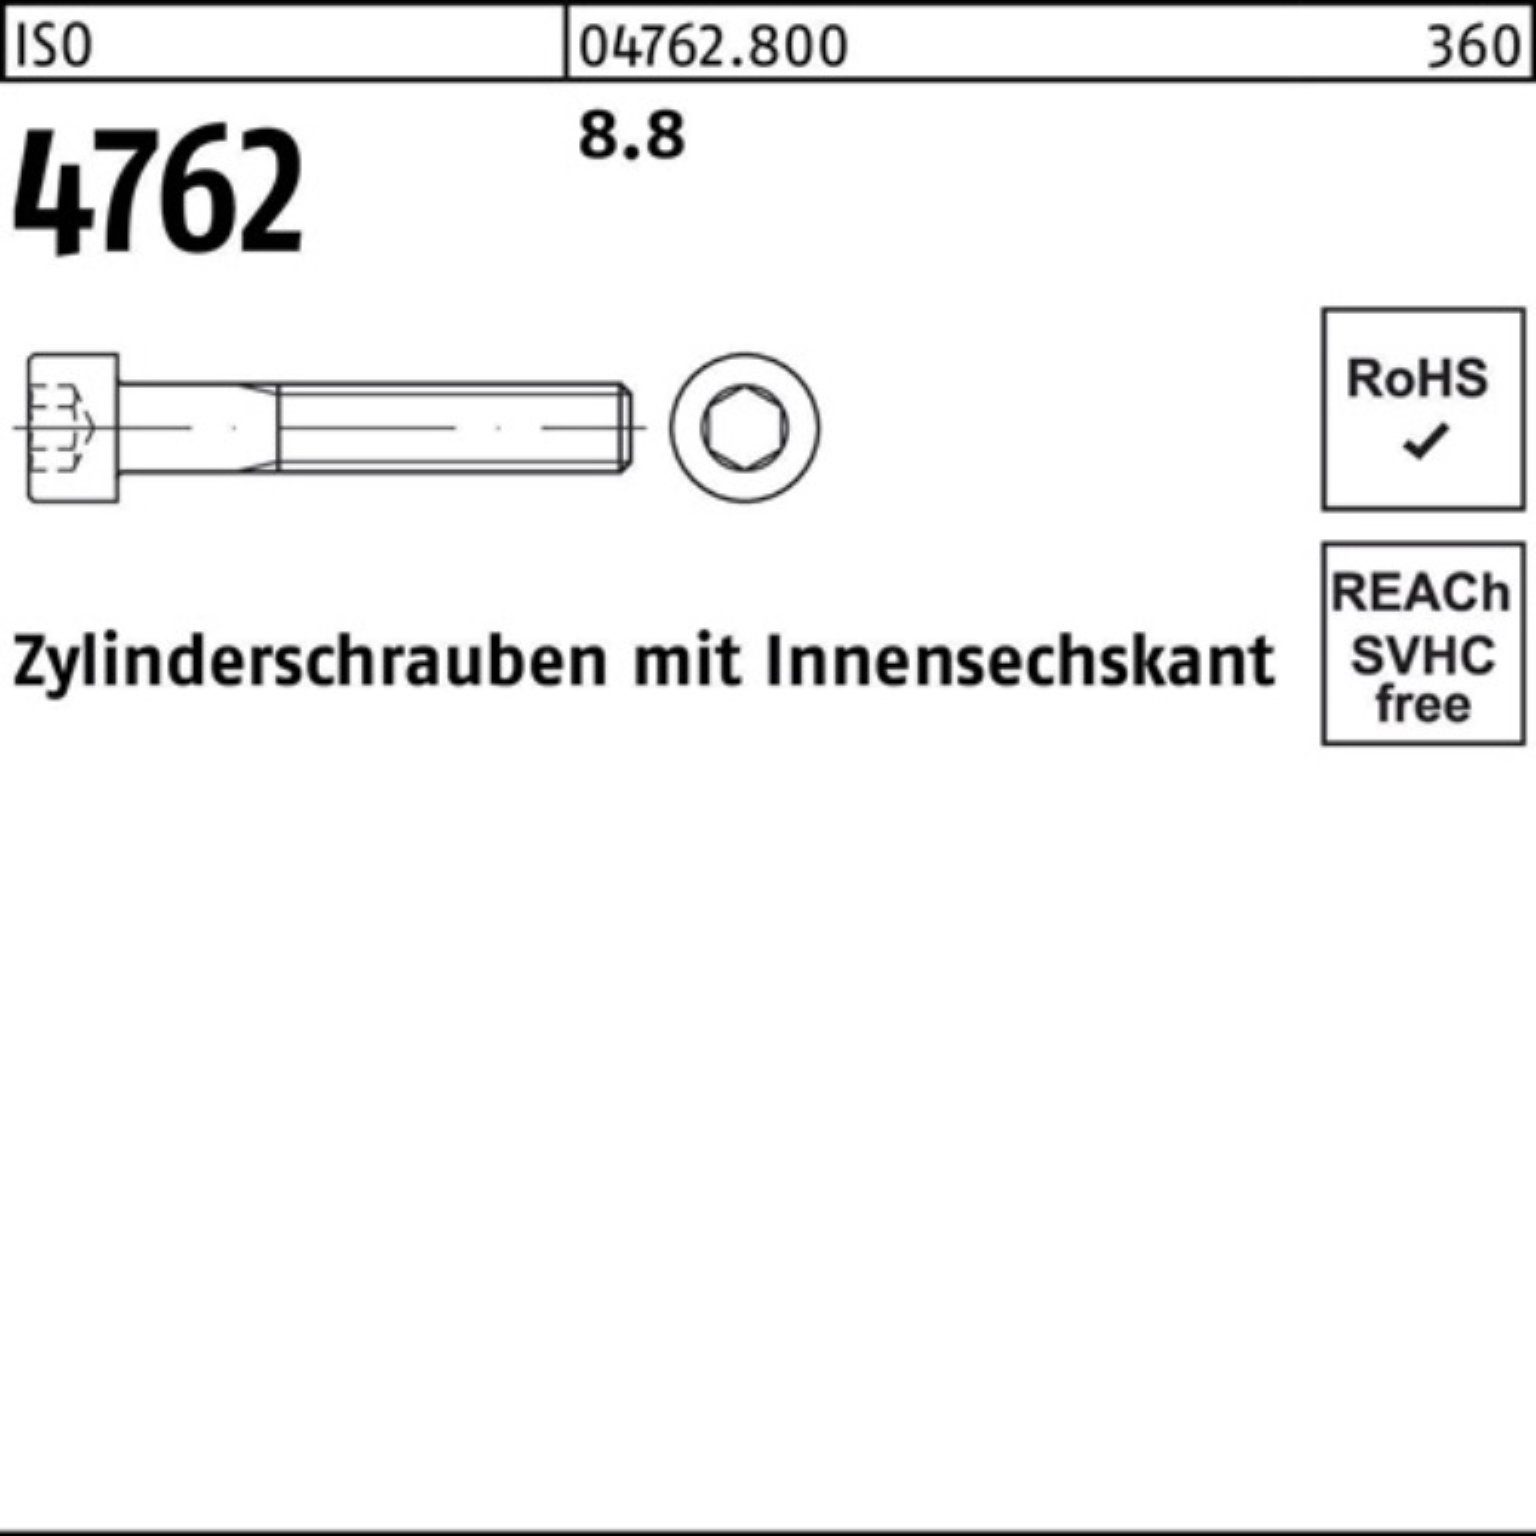 Reyher Zylinderschraube 100er Pack Stück Innen-6kt I M36x 8.8 290 Zylinderschraube 1 4762 ISO